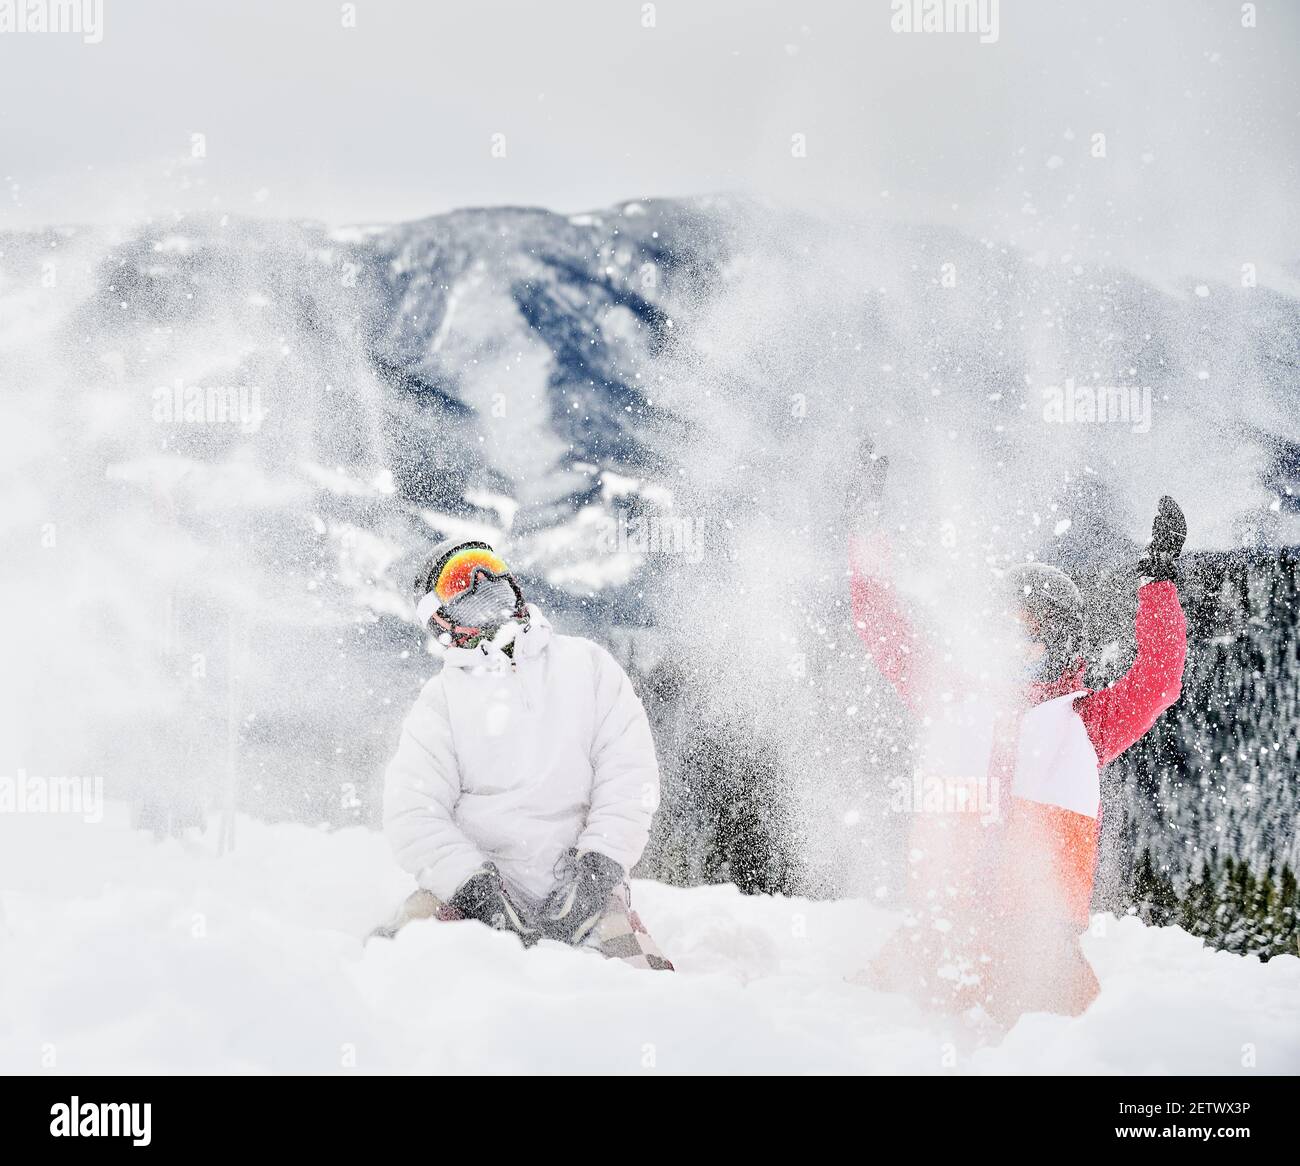 Junge Paar Skifahrer spielen im Schnee gegen faszinierende Landschaften im Hintergrund und werfen Schnee. Lebendige bunte Anzüge auf weißem Schnee. Konzept der Wintersport-Aktivitäten, Spaß und Beziehungen. Stockfoto